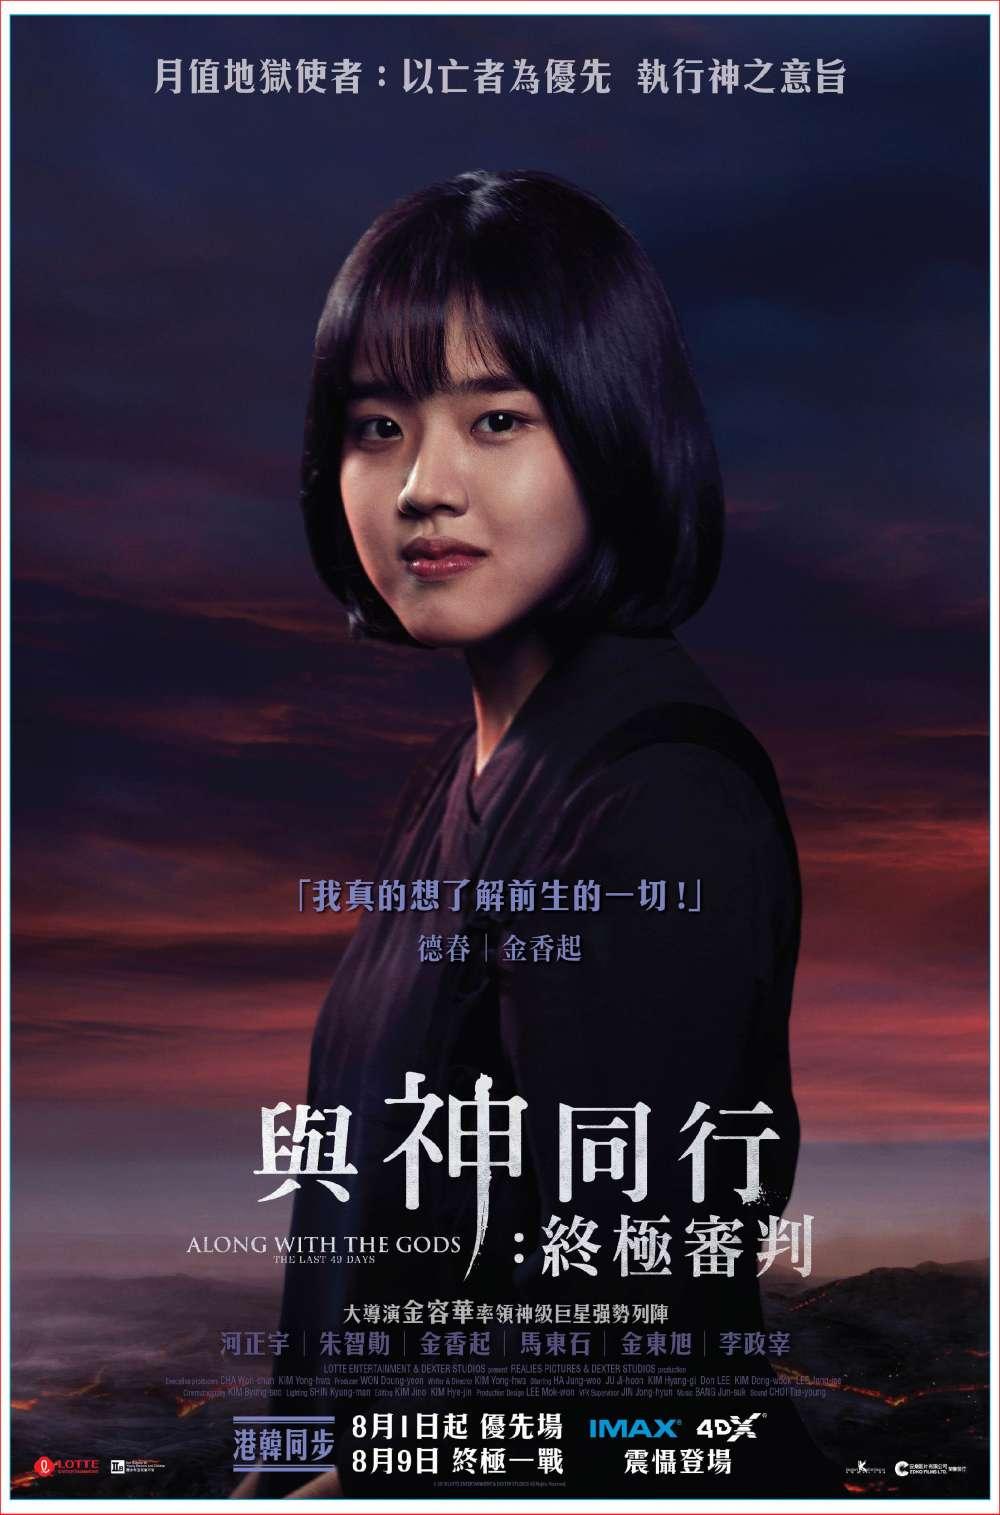 Hong Kong Character Poster #1